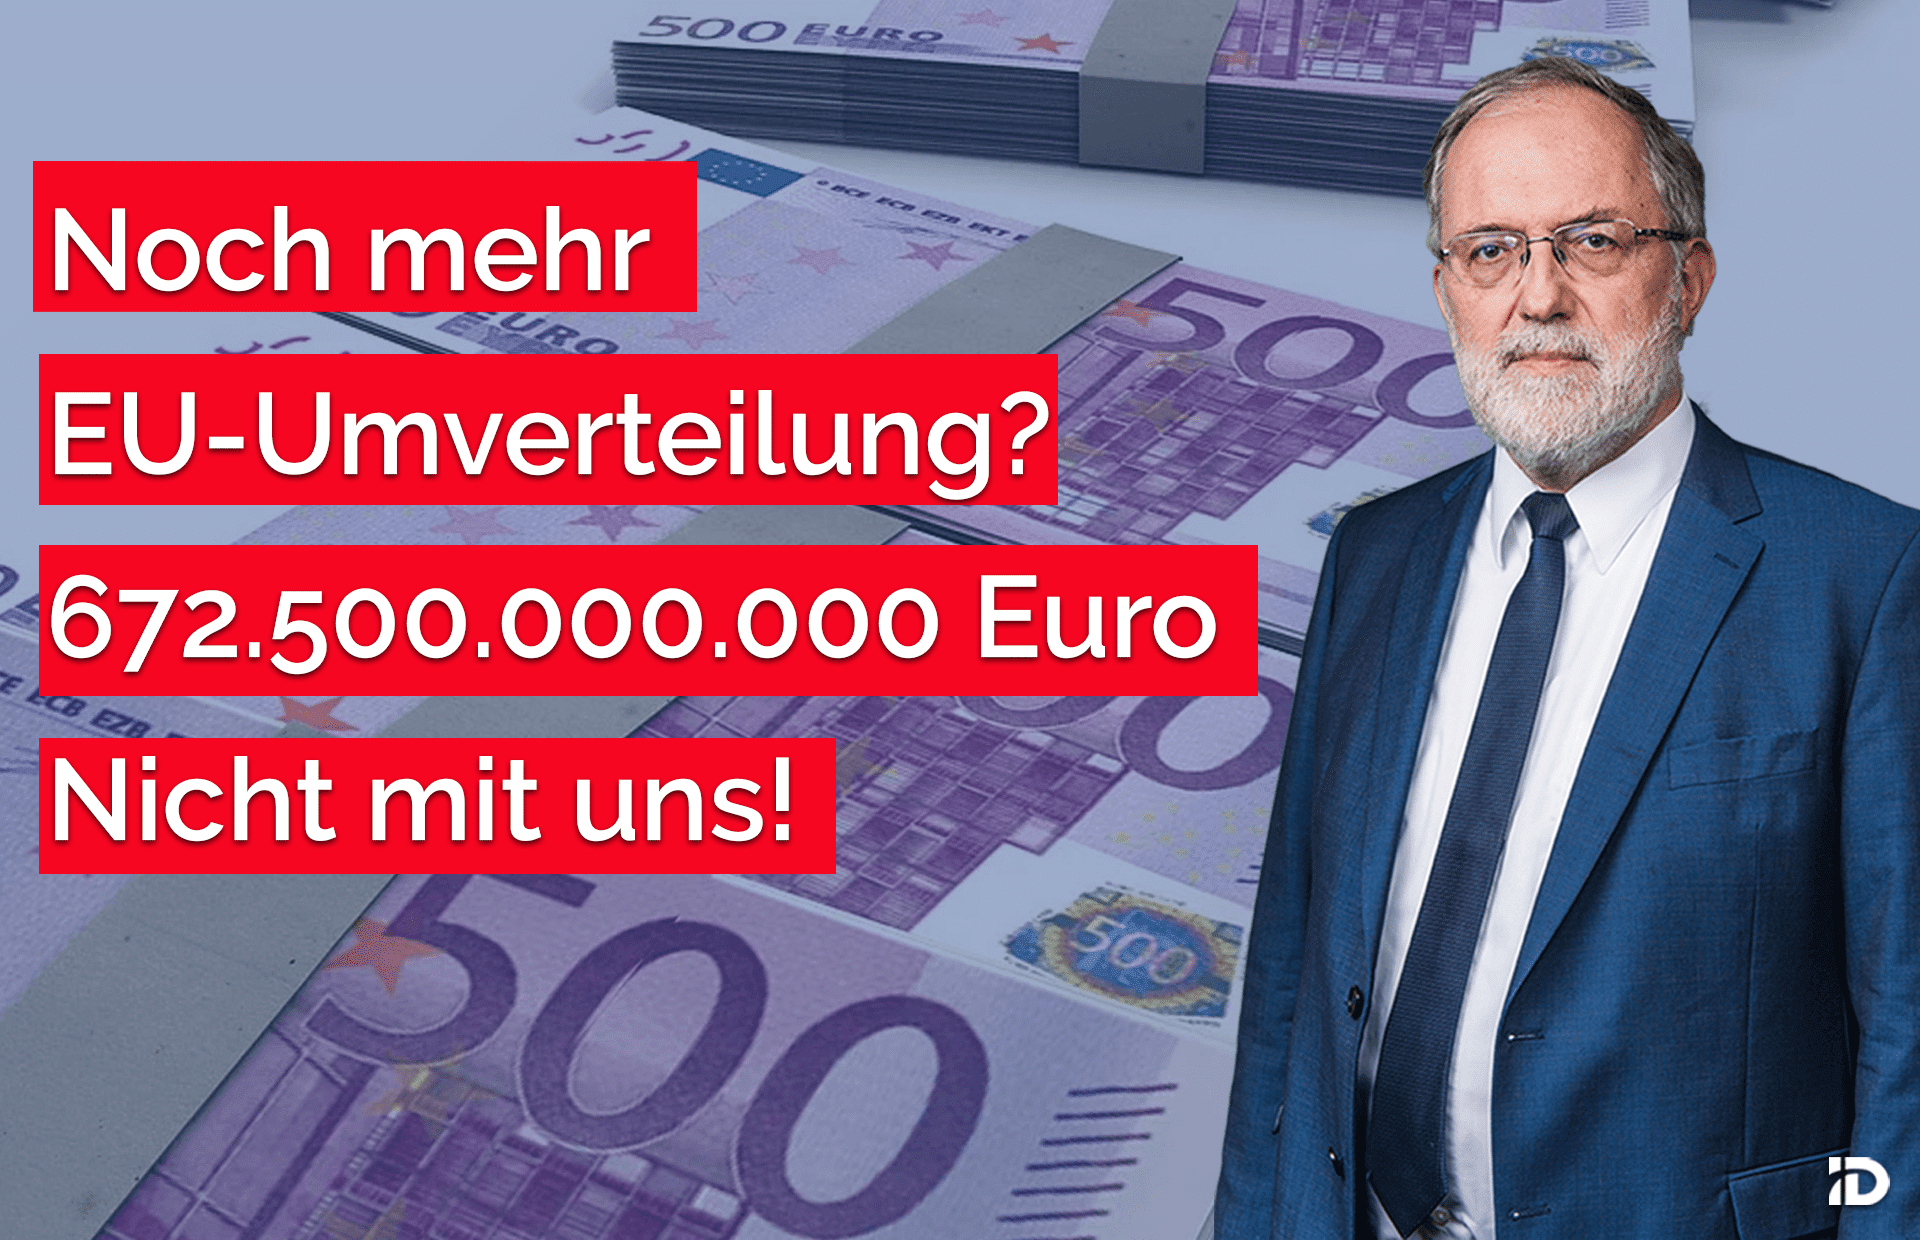 Noch mehr EU-Umverteilung: 672.500.000.000 Euro!